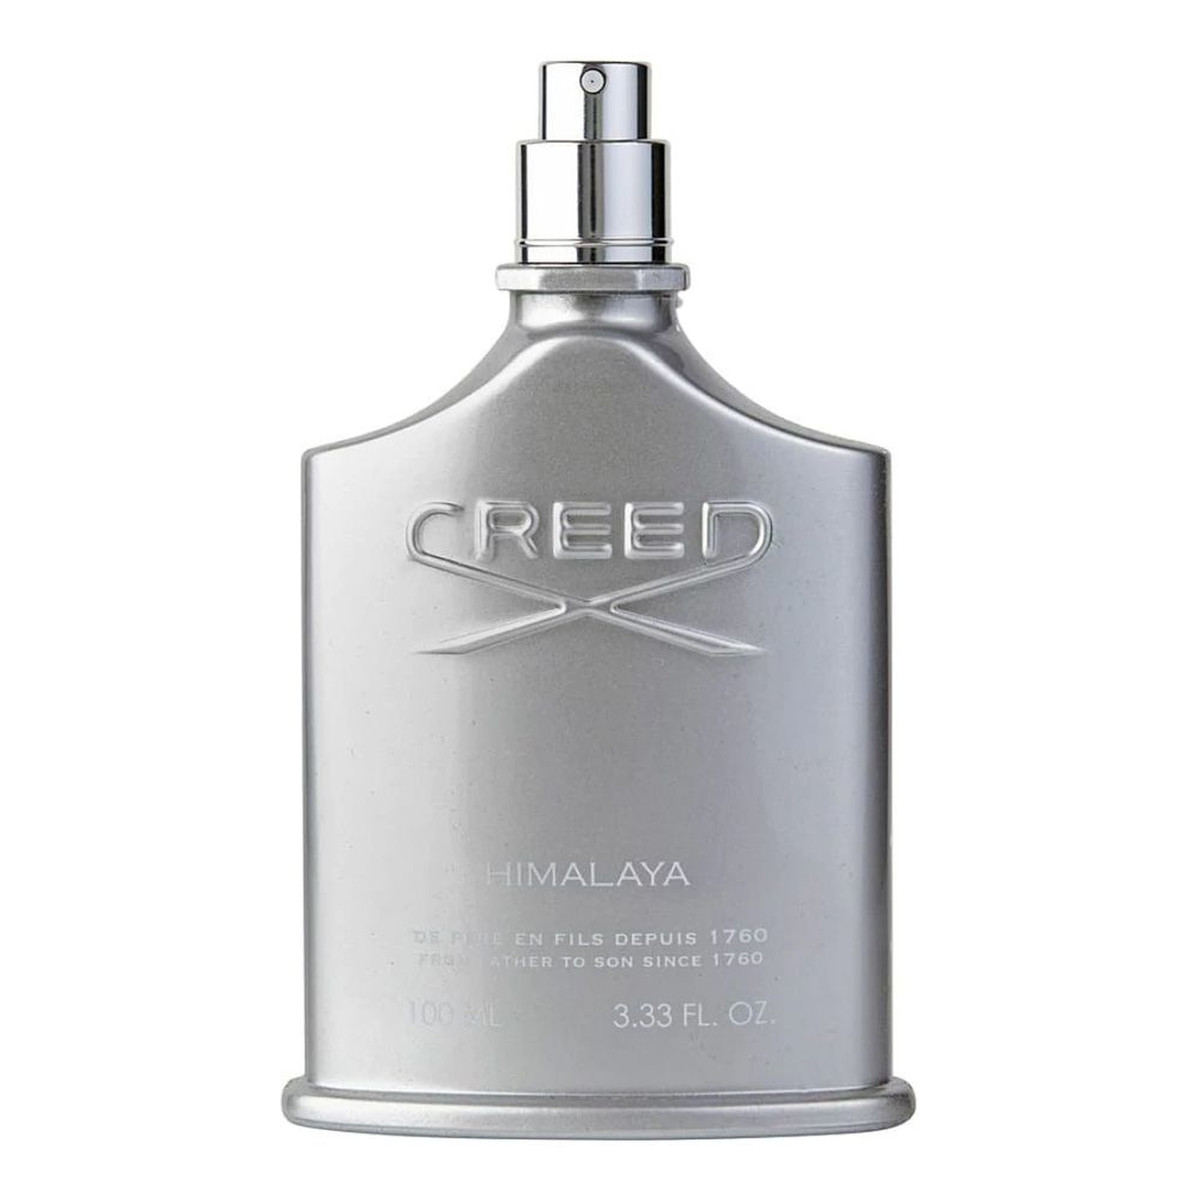 Creed Himalaya Woda perfumowana spray tester 100ml